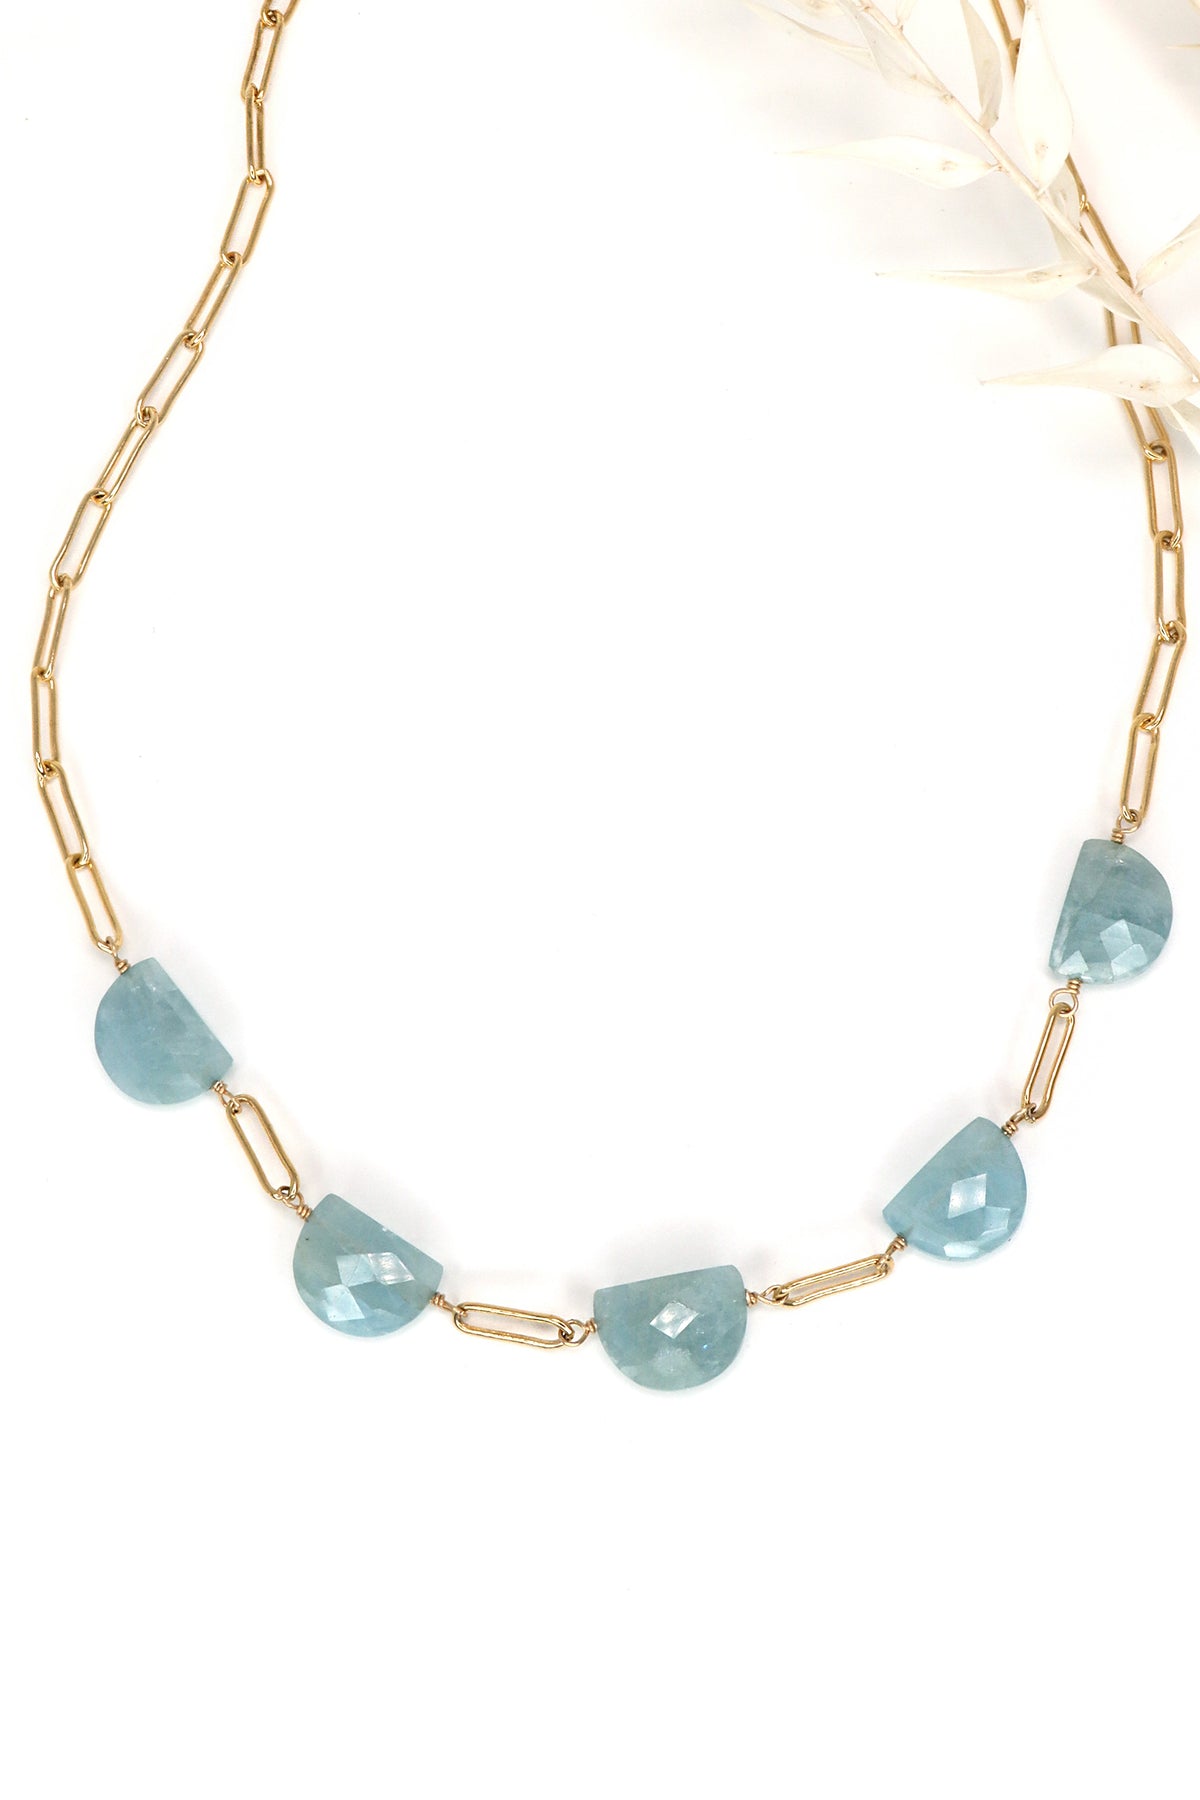 Aquamarine Intermezzo necklace